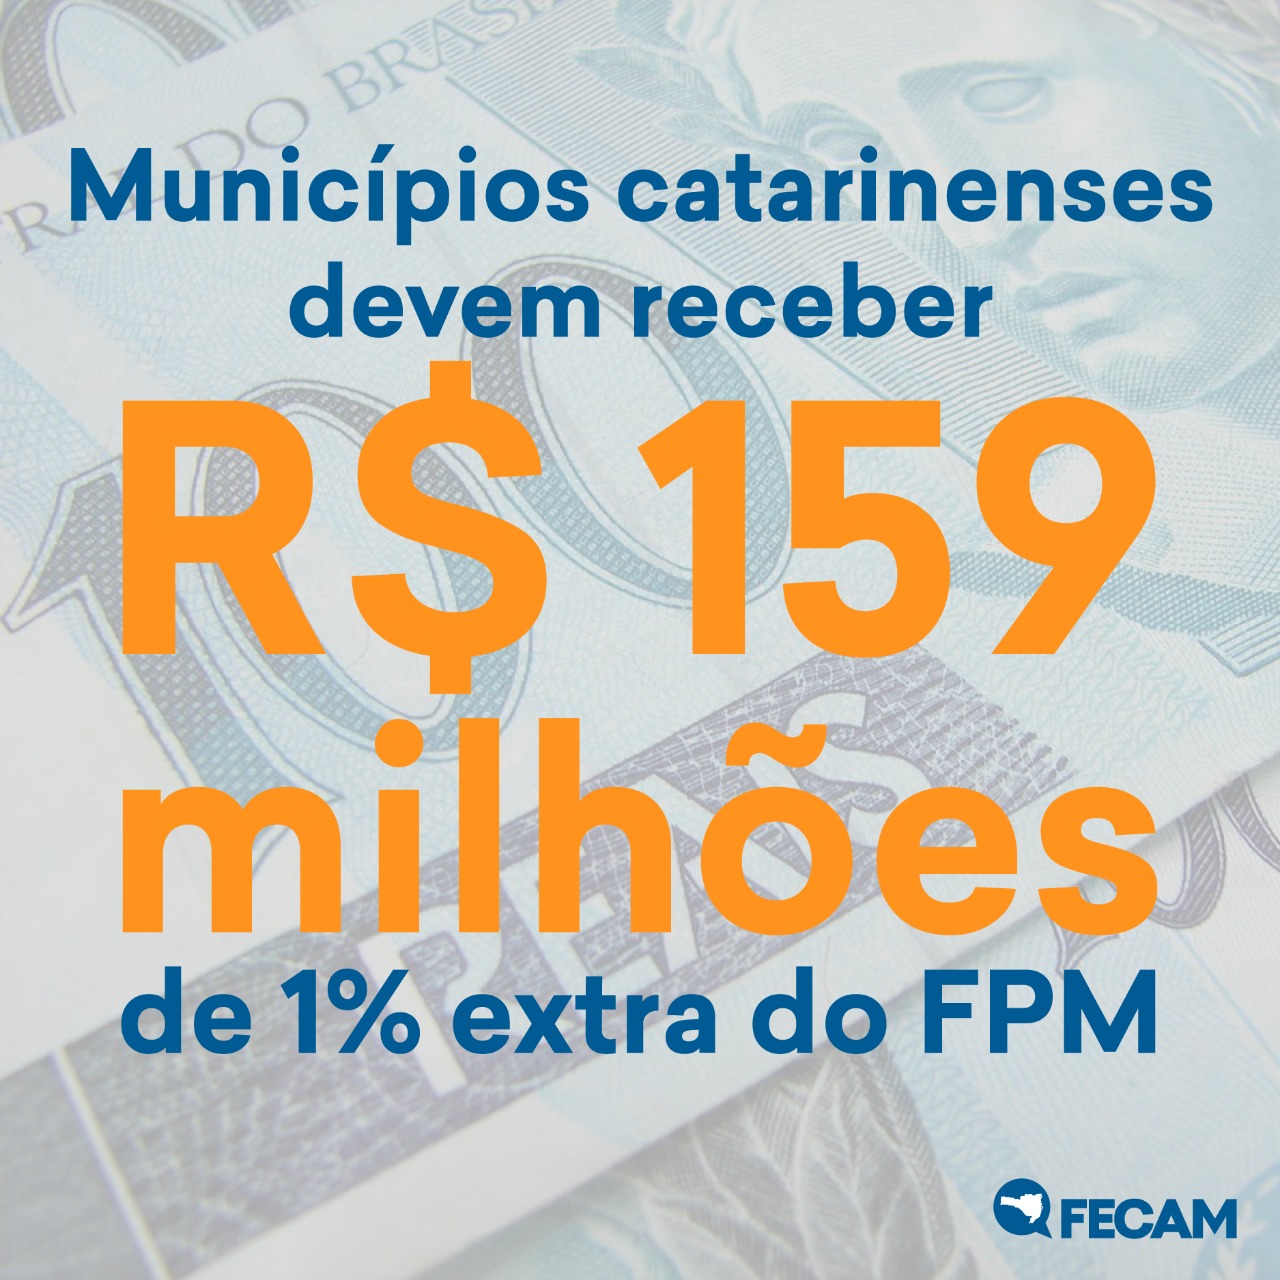 You are currently viewing Municípios catarinenses devem receber R$ 159 milhões de 1% extra do FPM